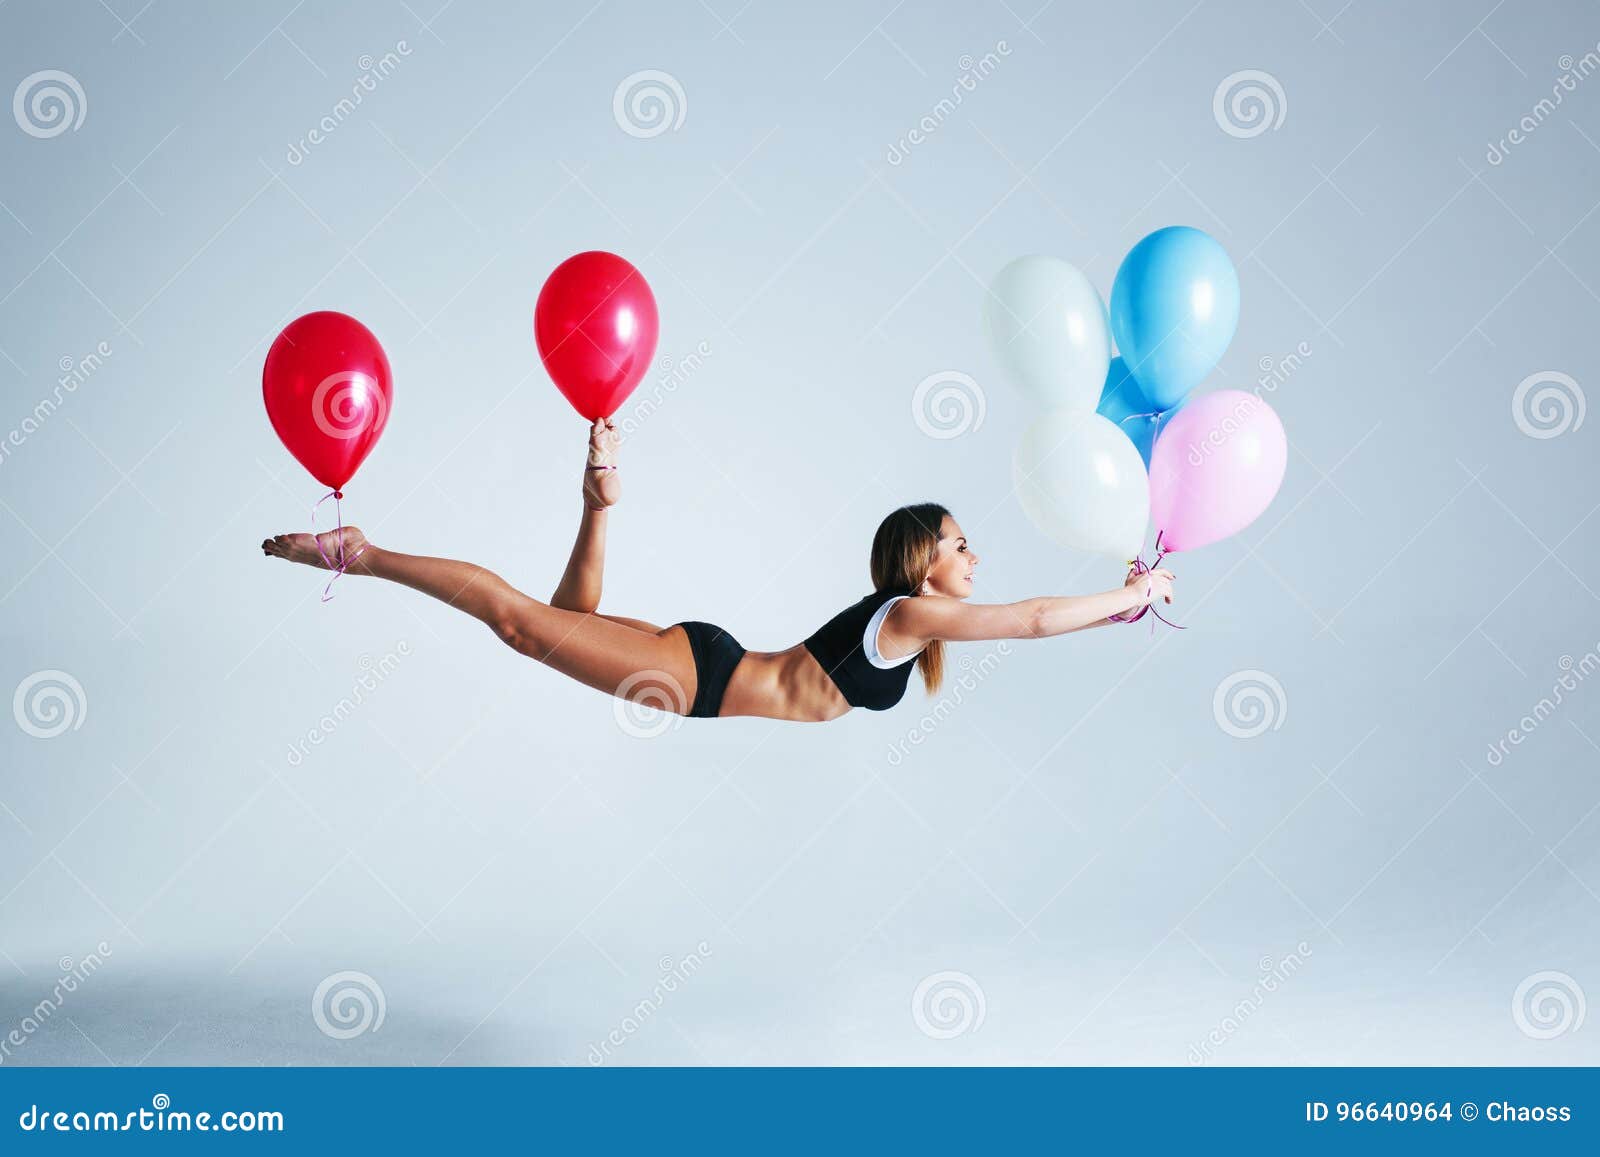 Девушка на шаре 18. Девушка летит на воздушных шарах. Девушка с шариками. Девушка с шариком в руке. Левитация с шарами.